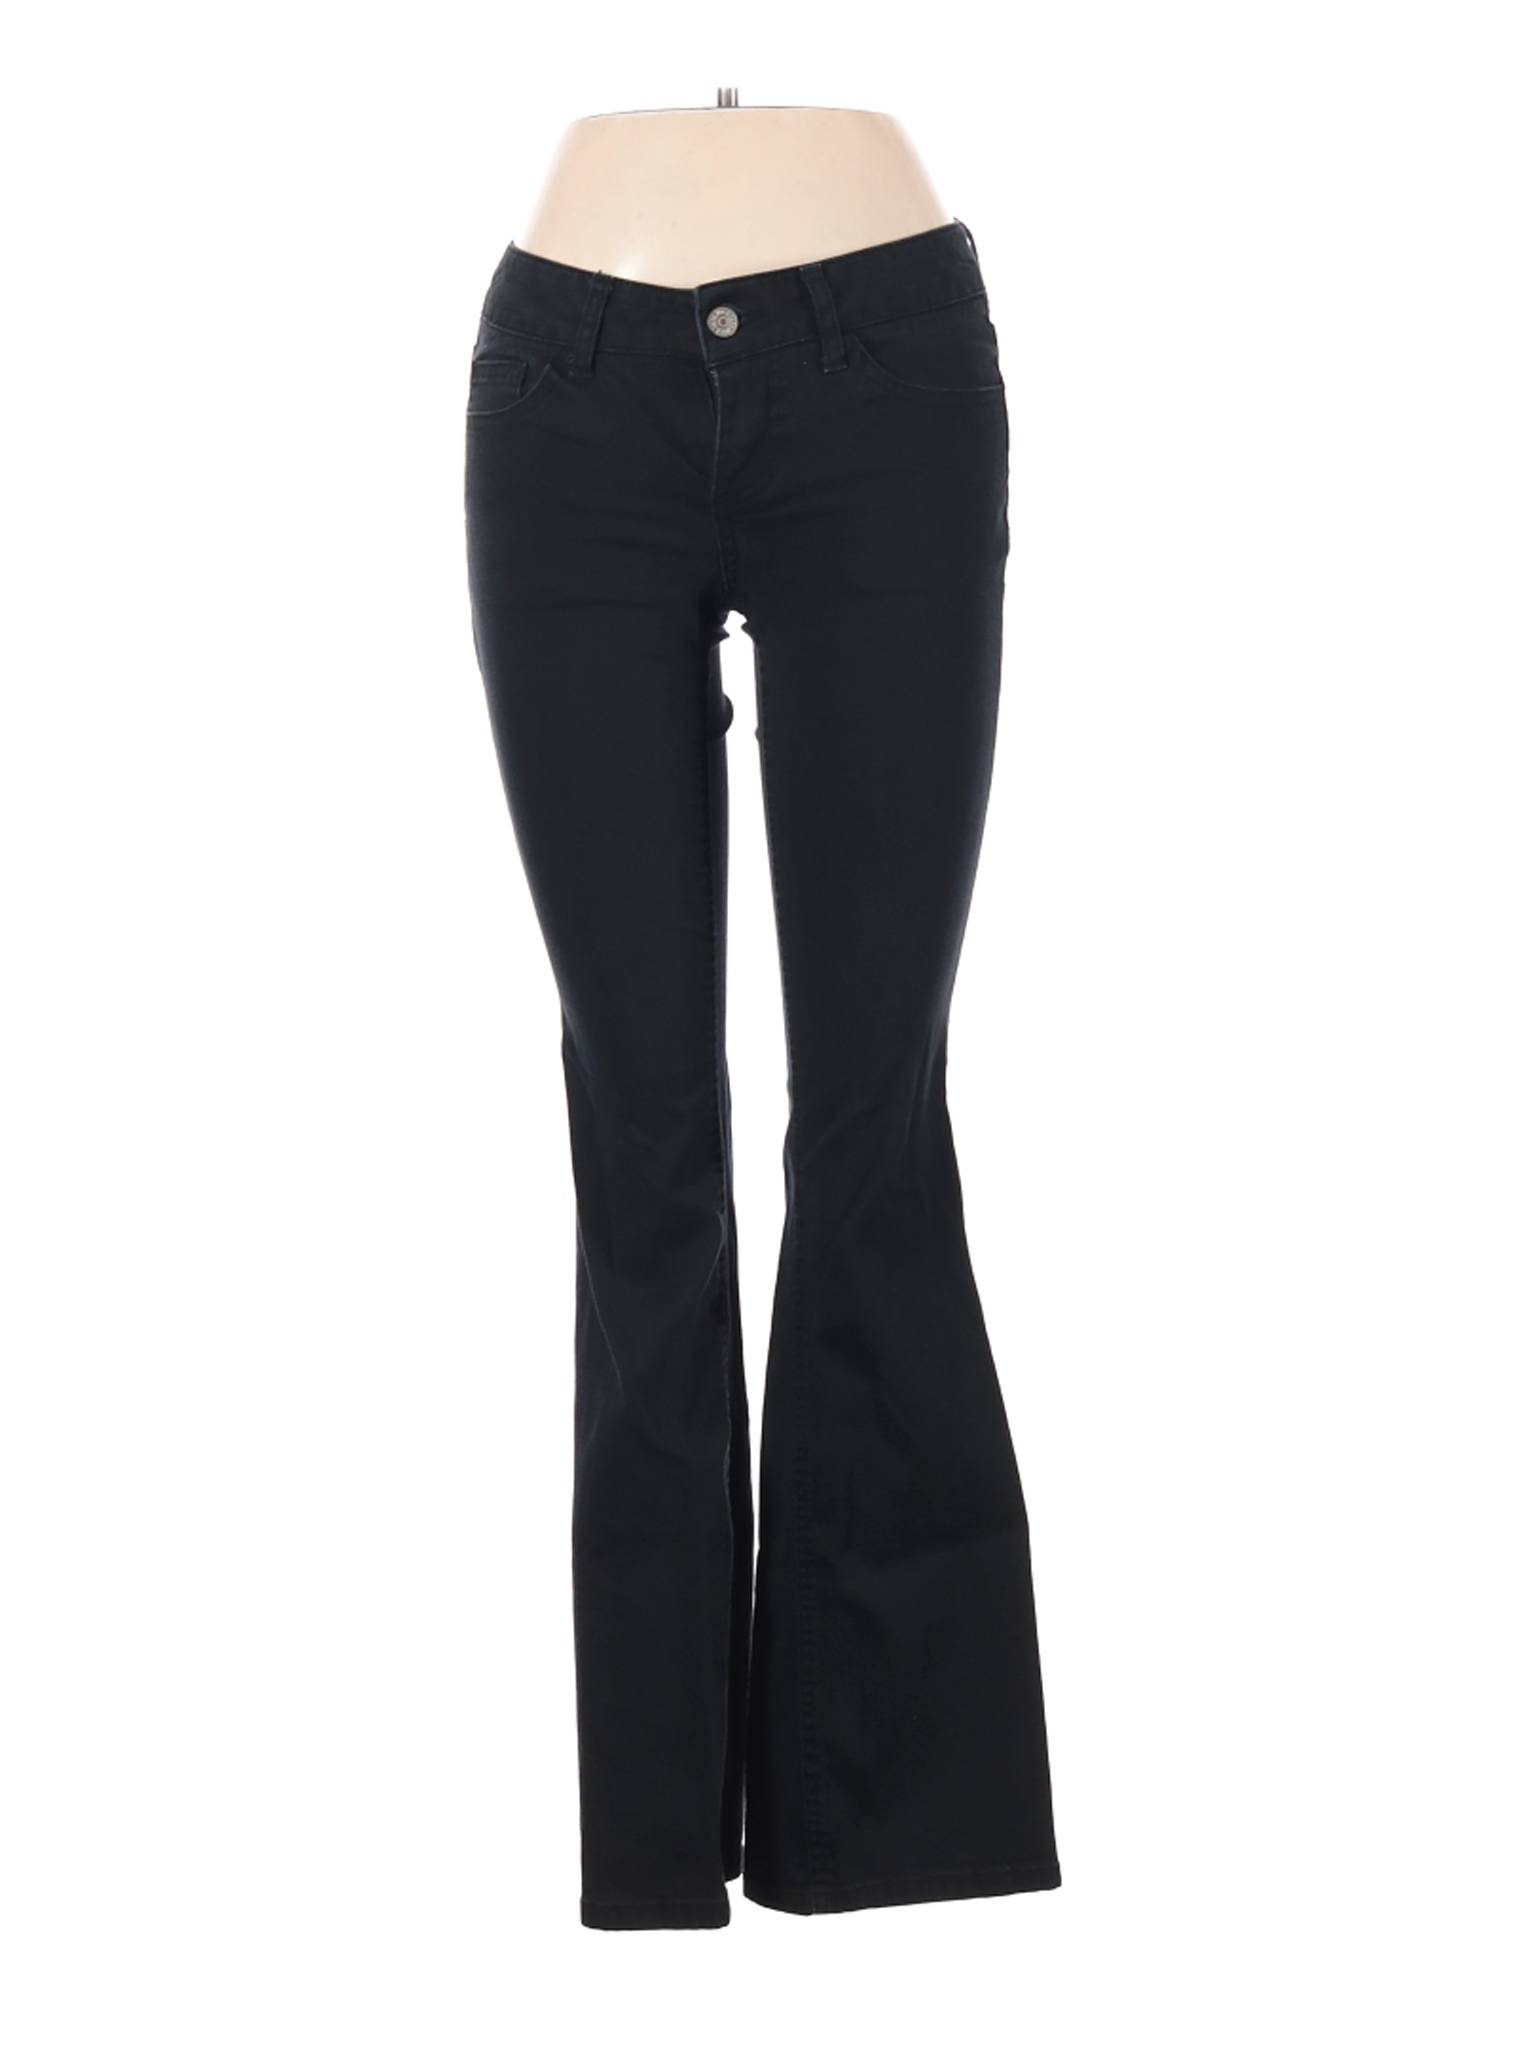 Dickies Women Black Jeans 5 | eBay